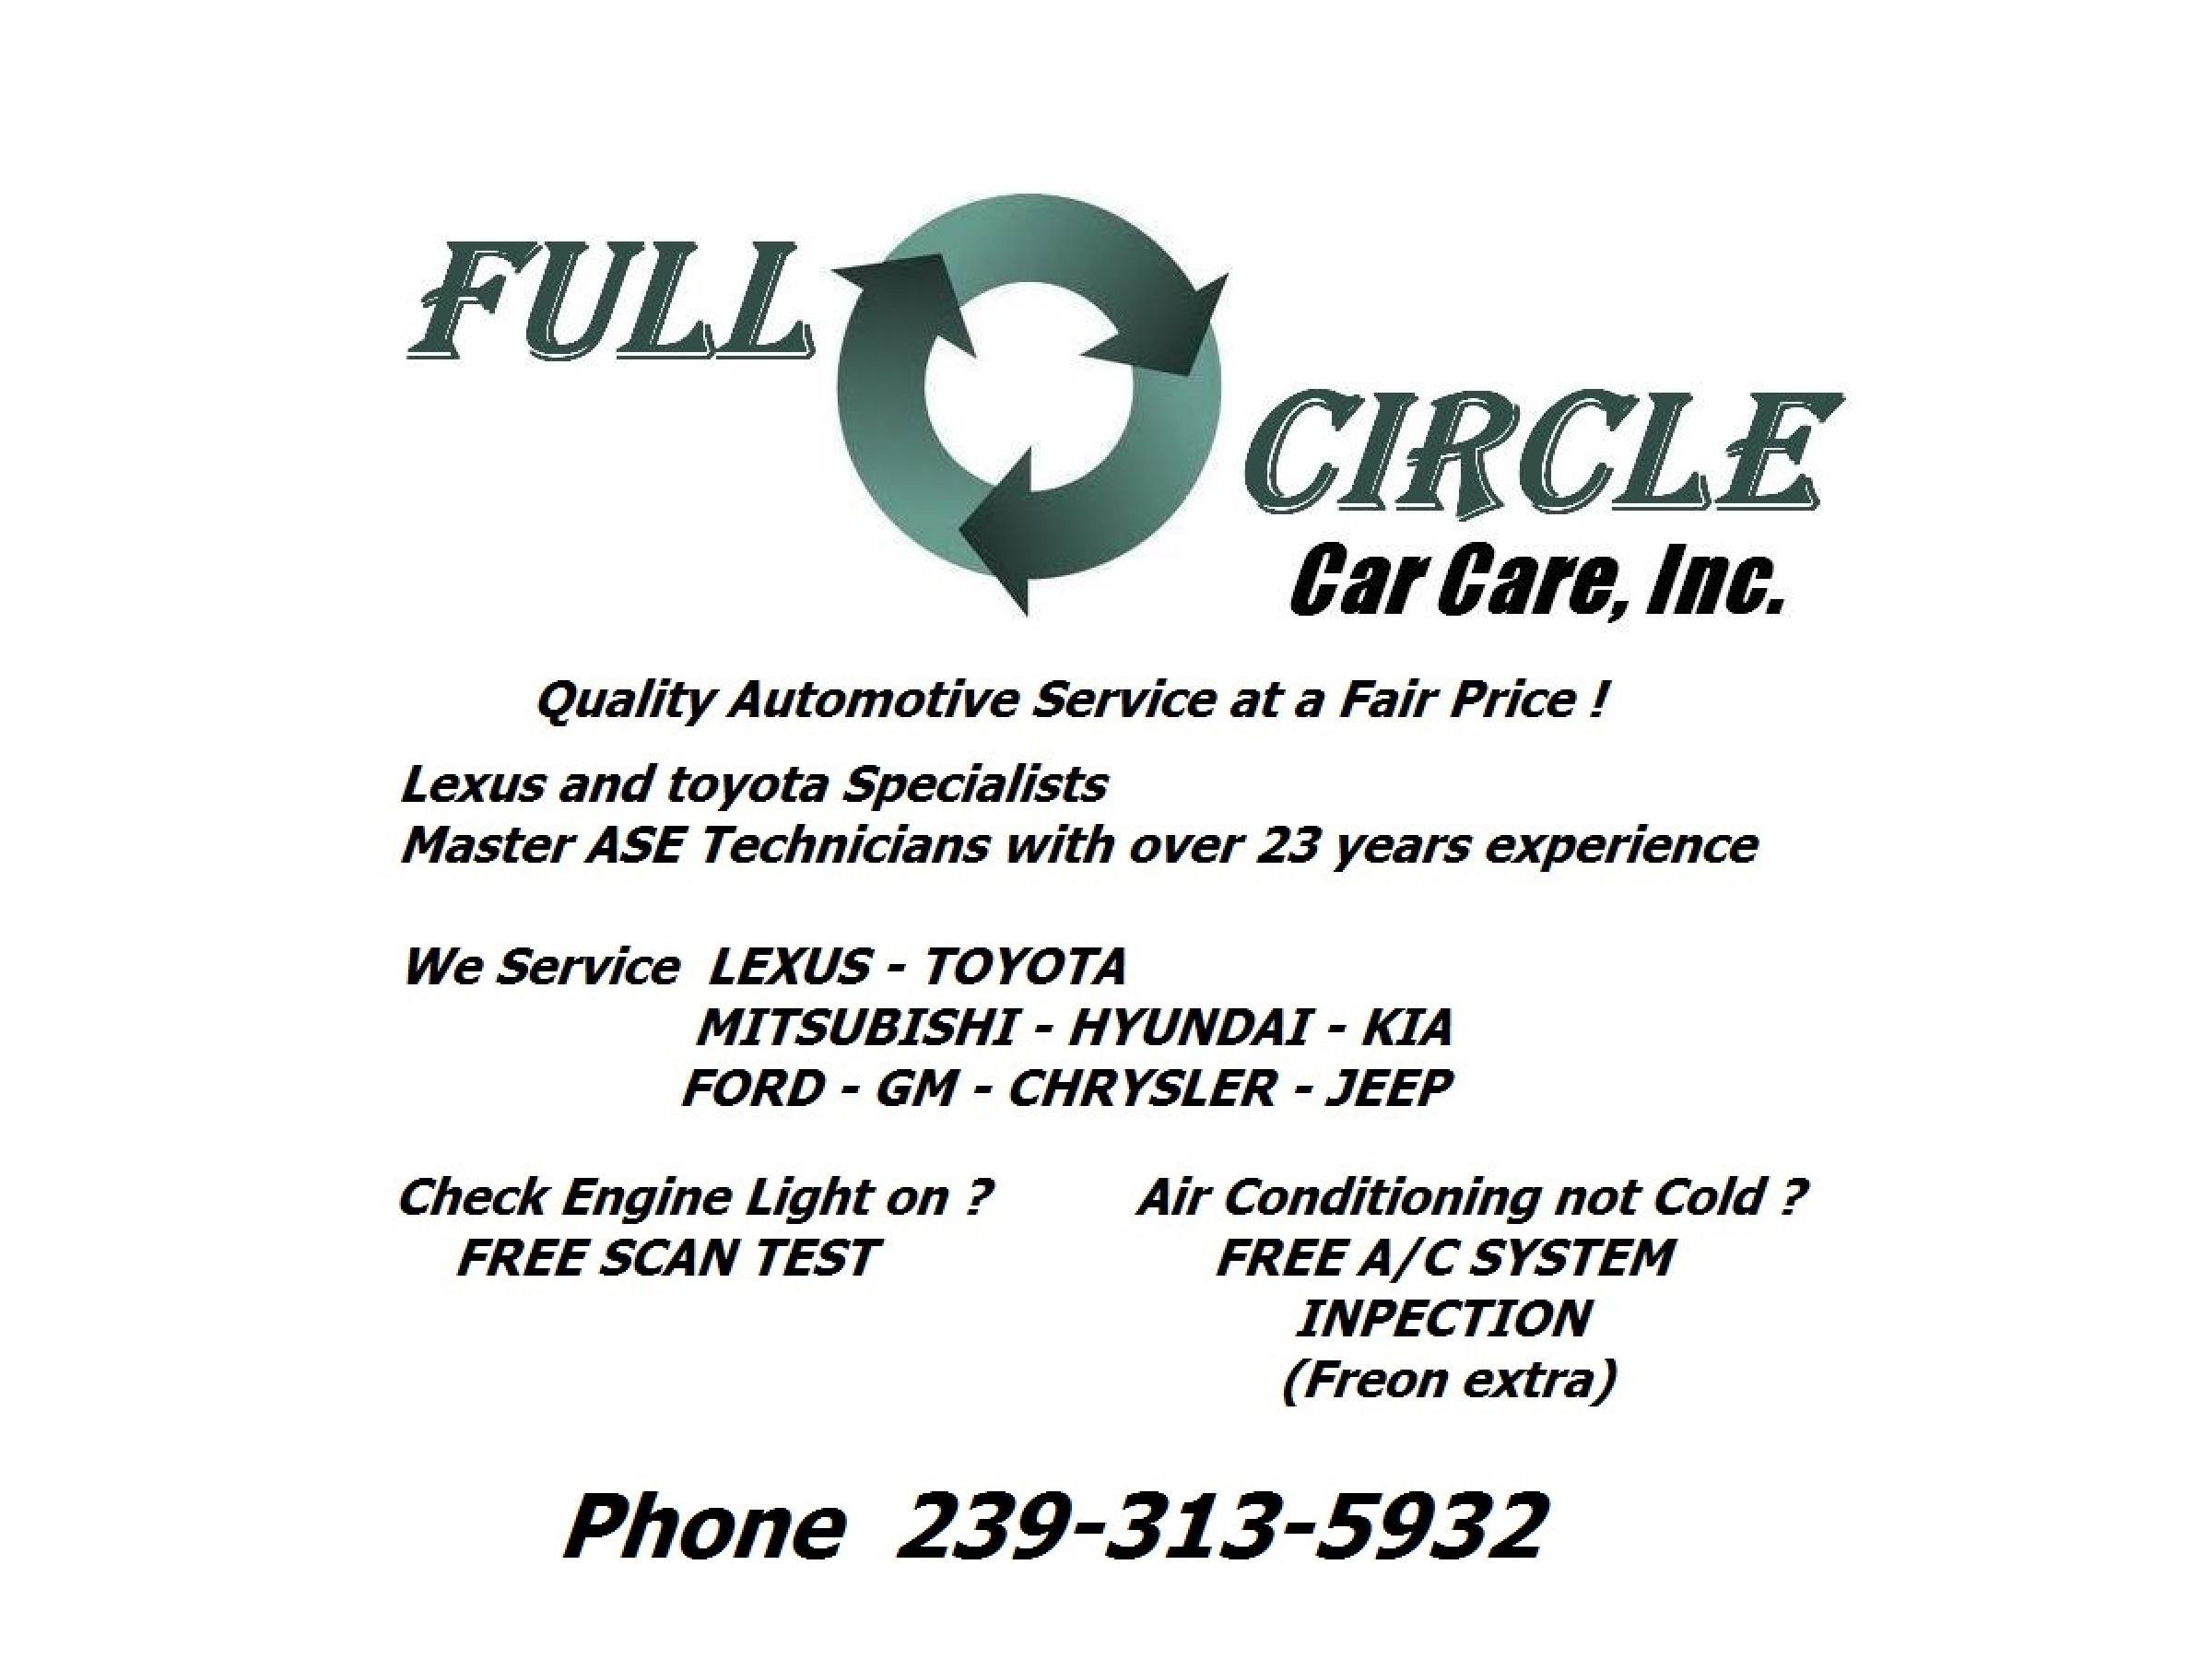 full circle car care,inc